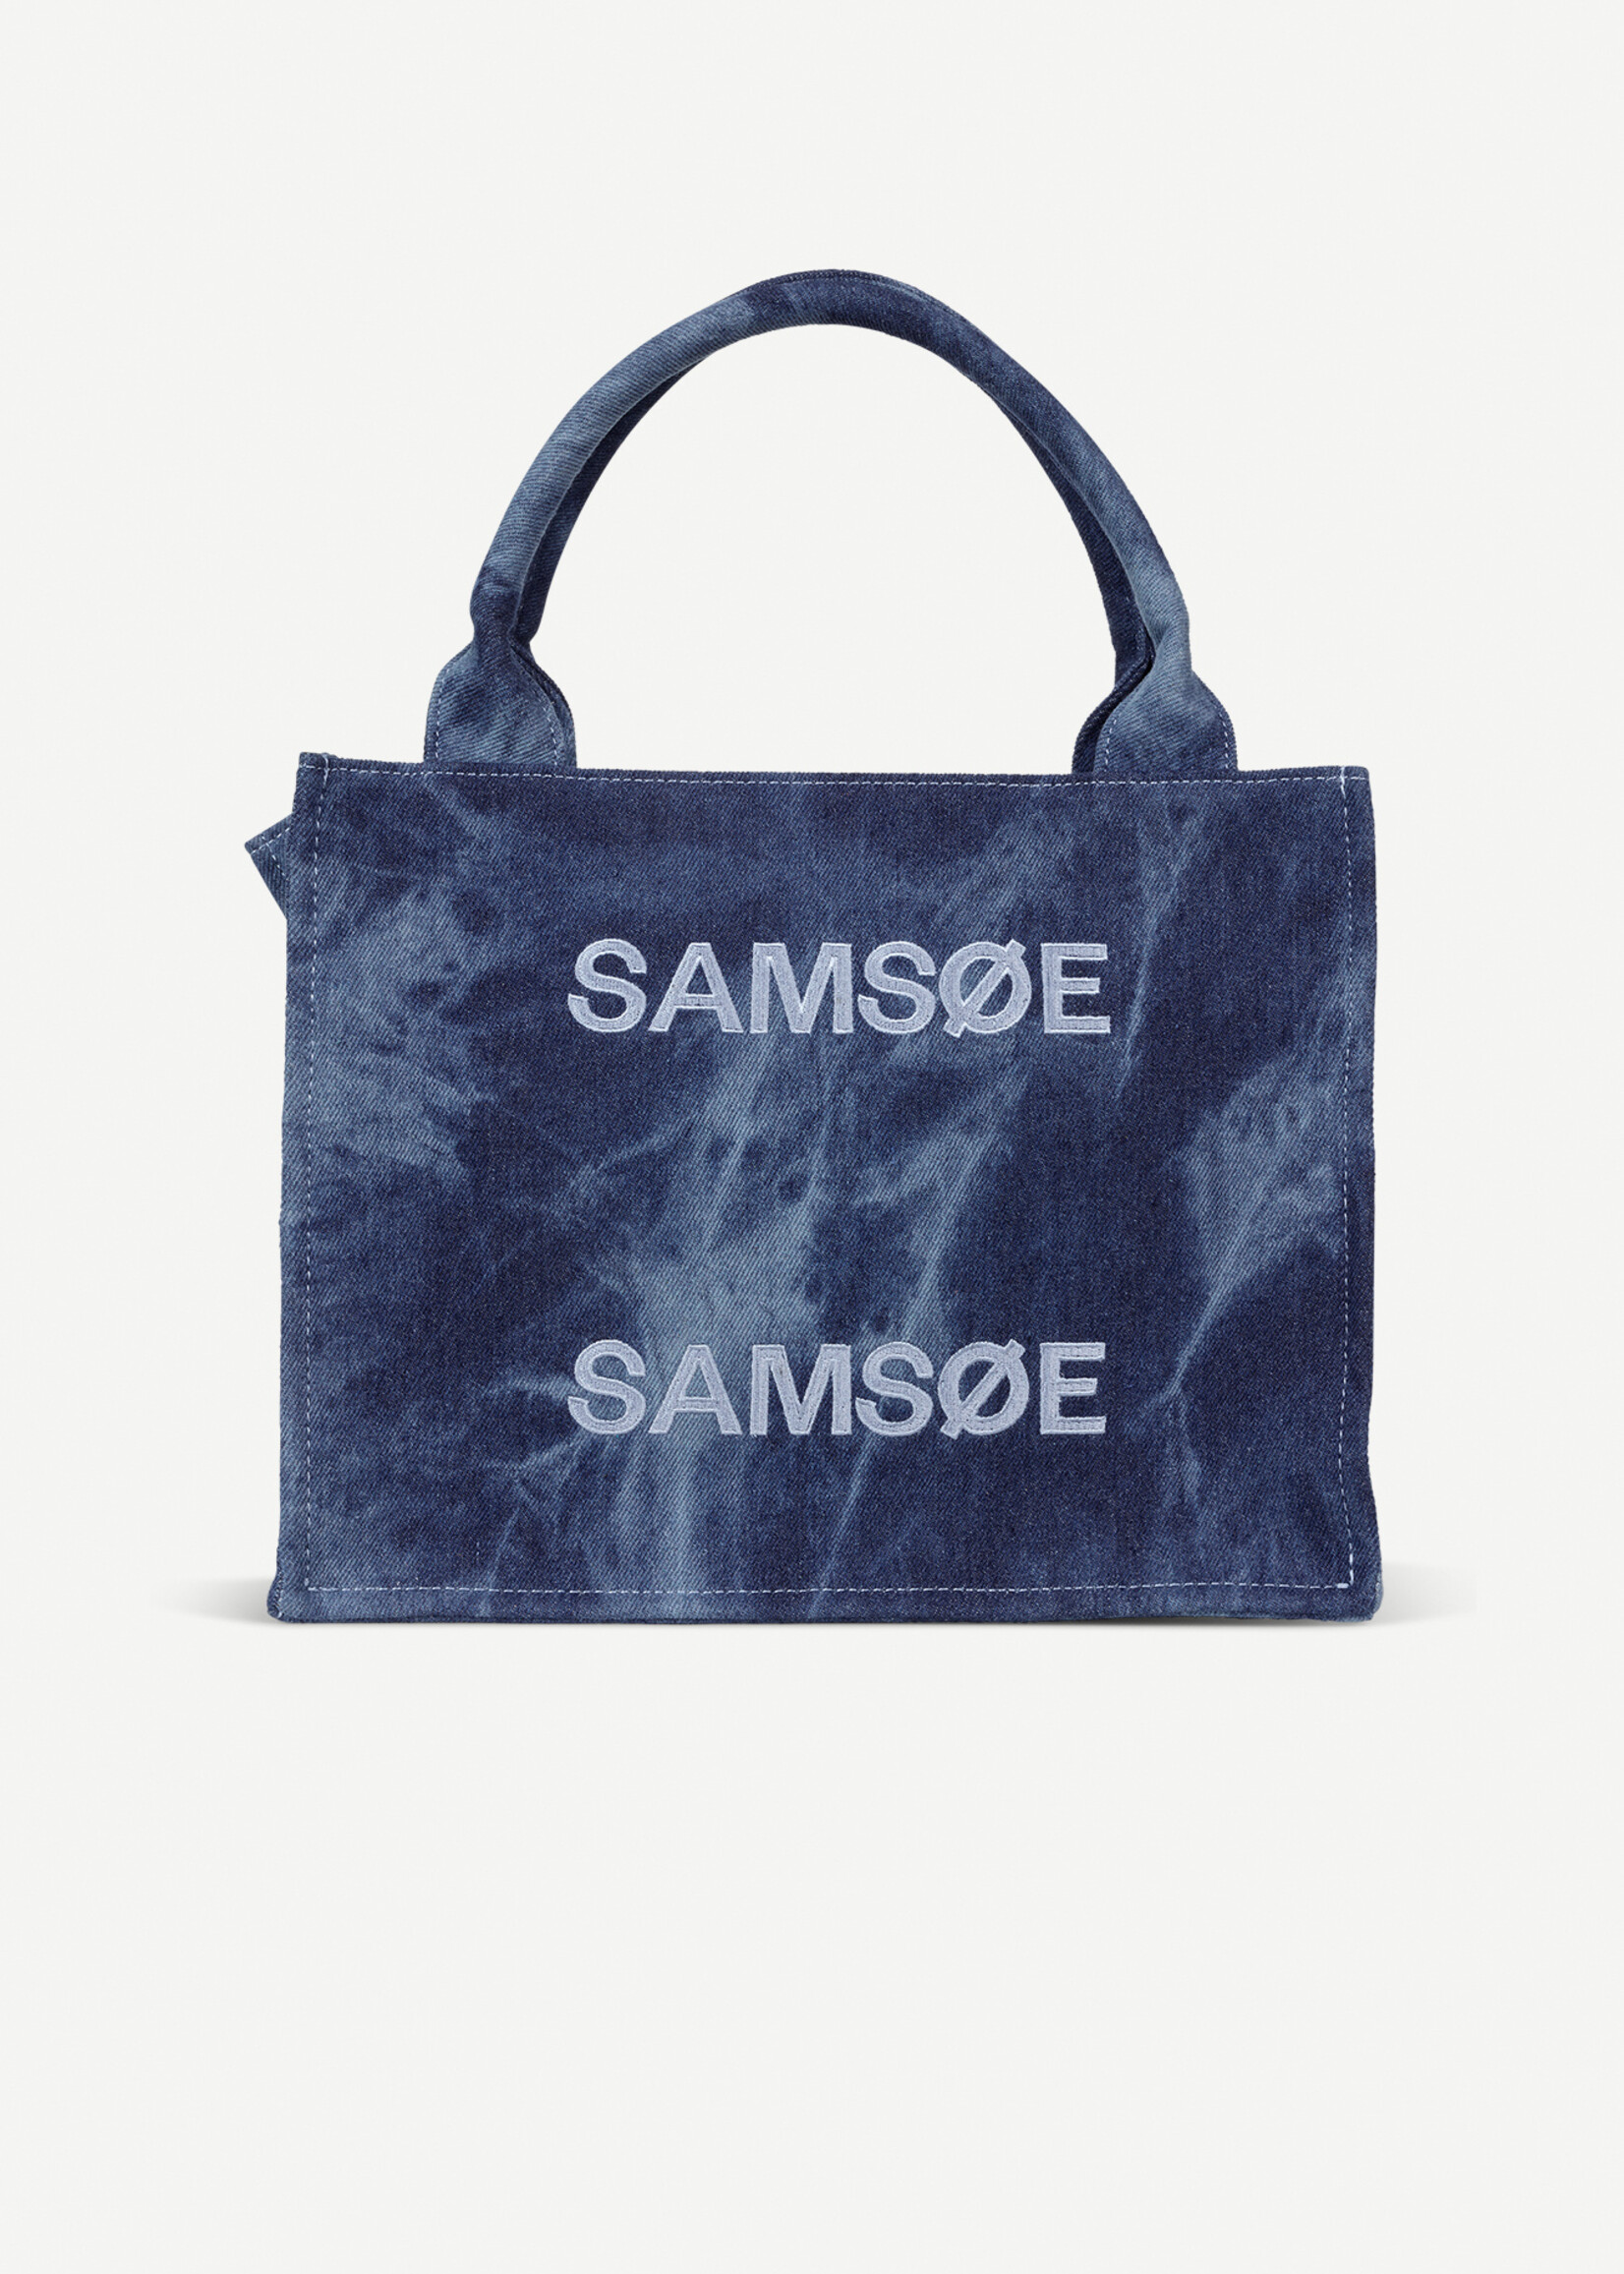 Samsoe Samsoe Sabetty Bag 15118 Washed Denim